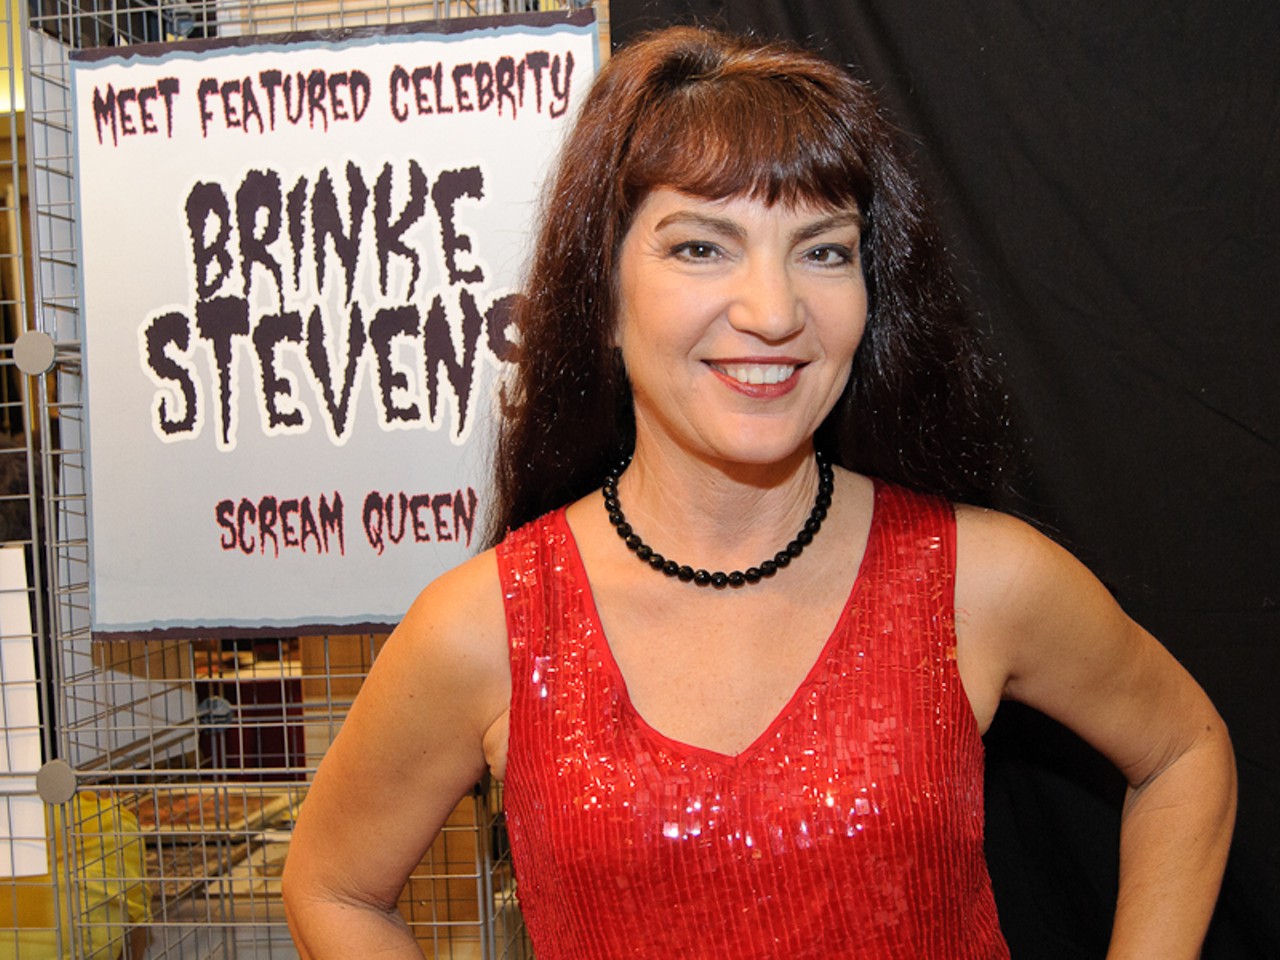 The Scream Queen, Brinke Stevens. Stevens specializes in cult films like Slumber Party Massacre.